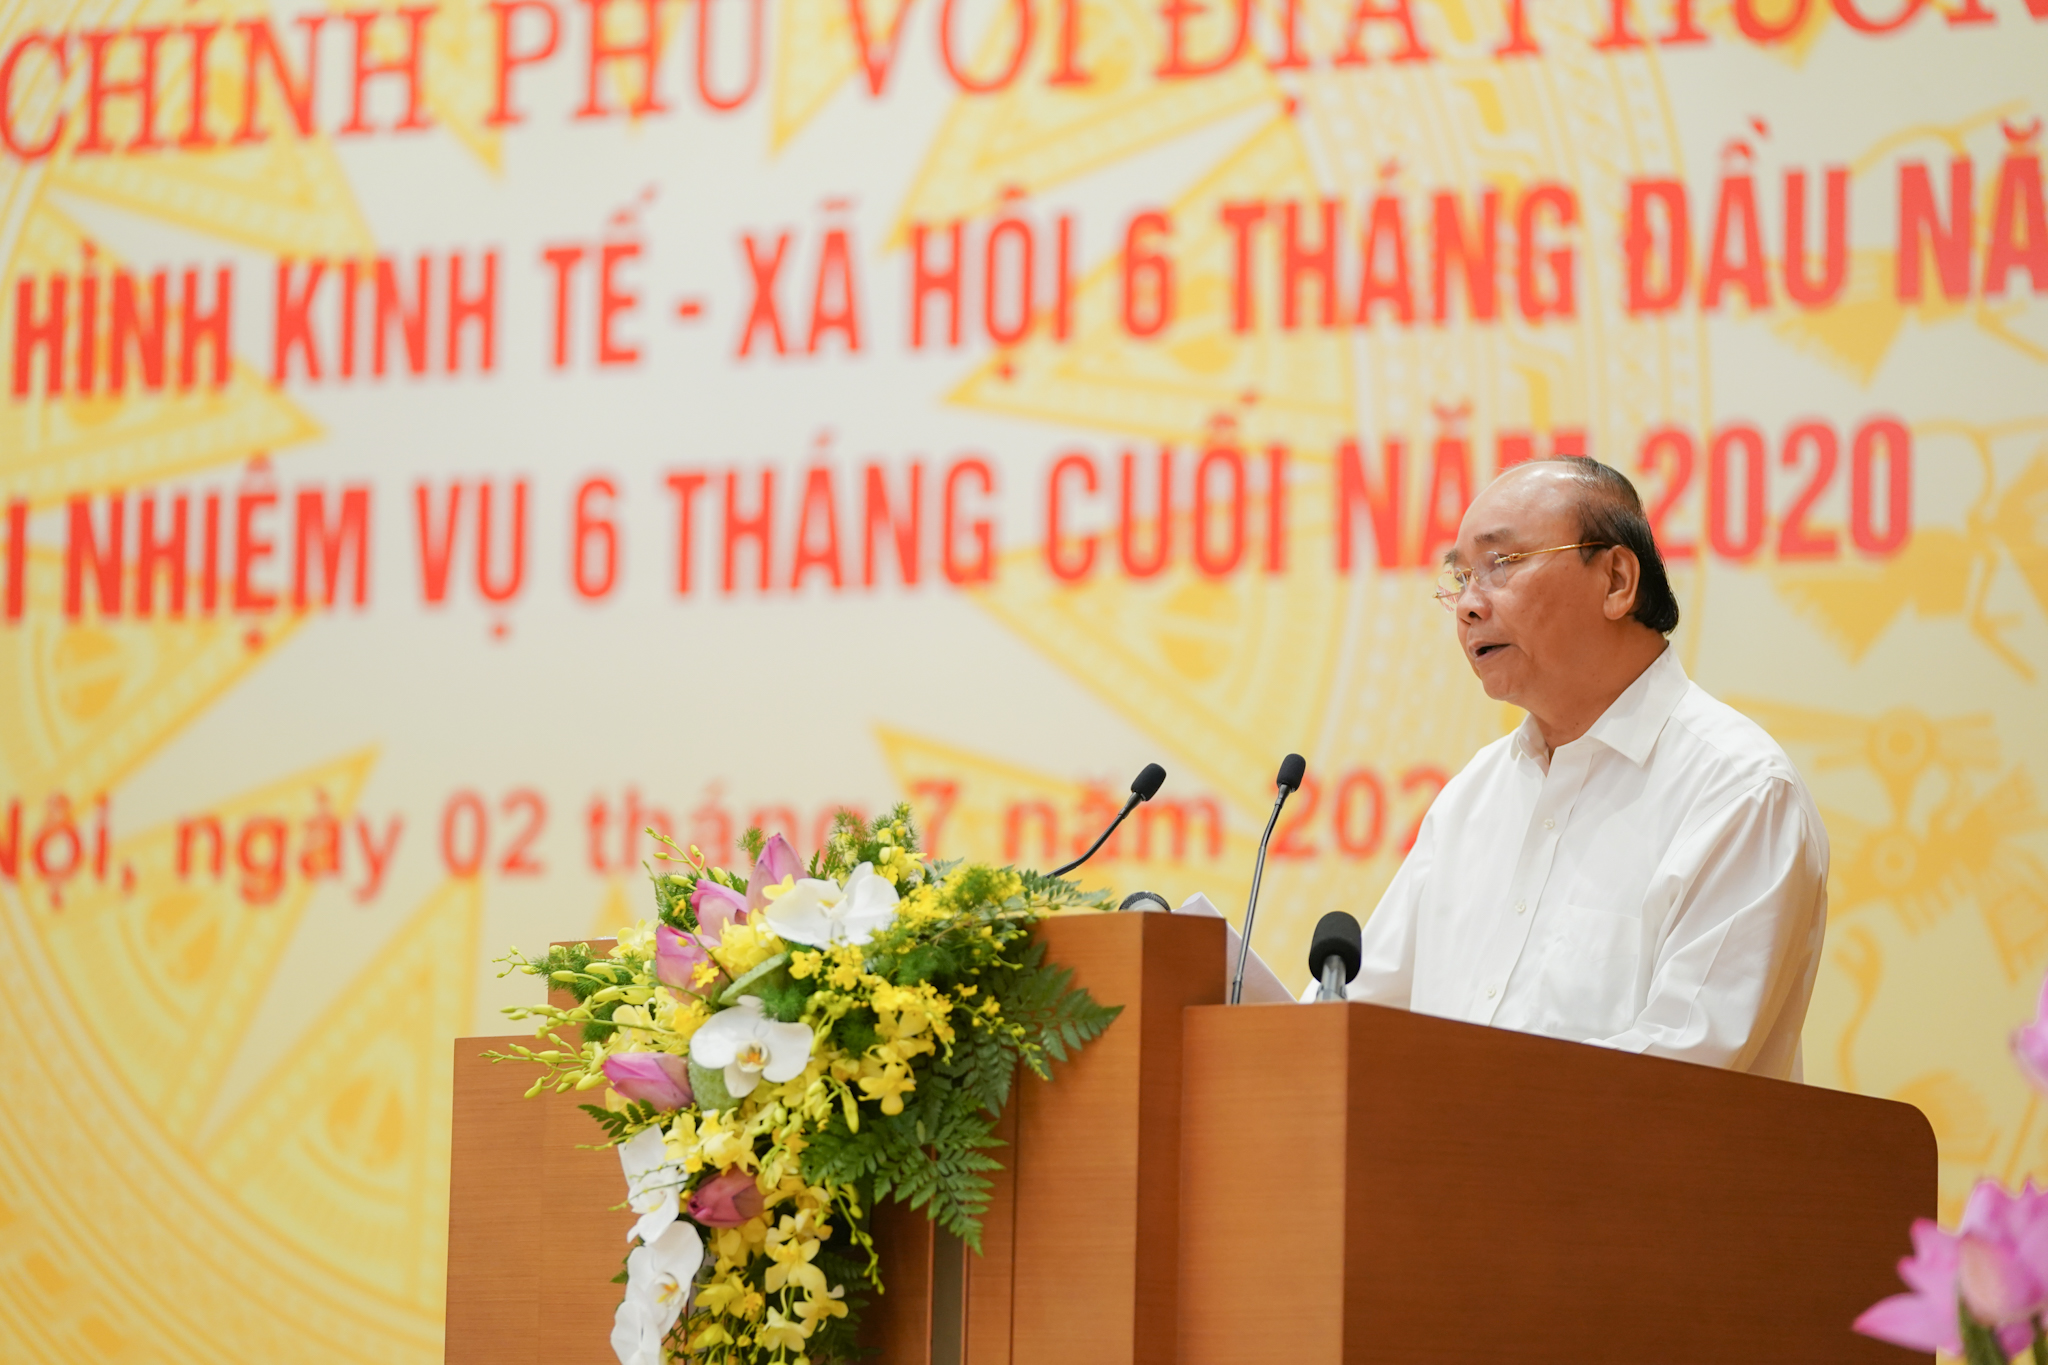 Thủ tướng Nguyễn Xuân Phúc phát biểu tại hội nghị. Ảnh VGP/Quang Hiếu